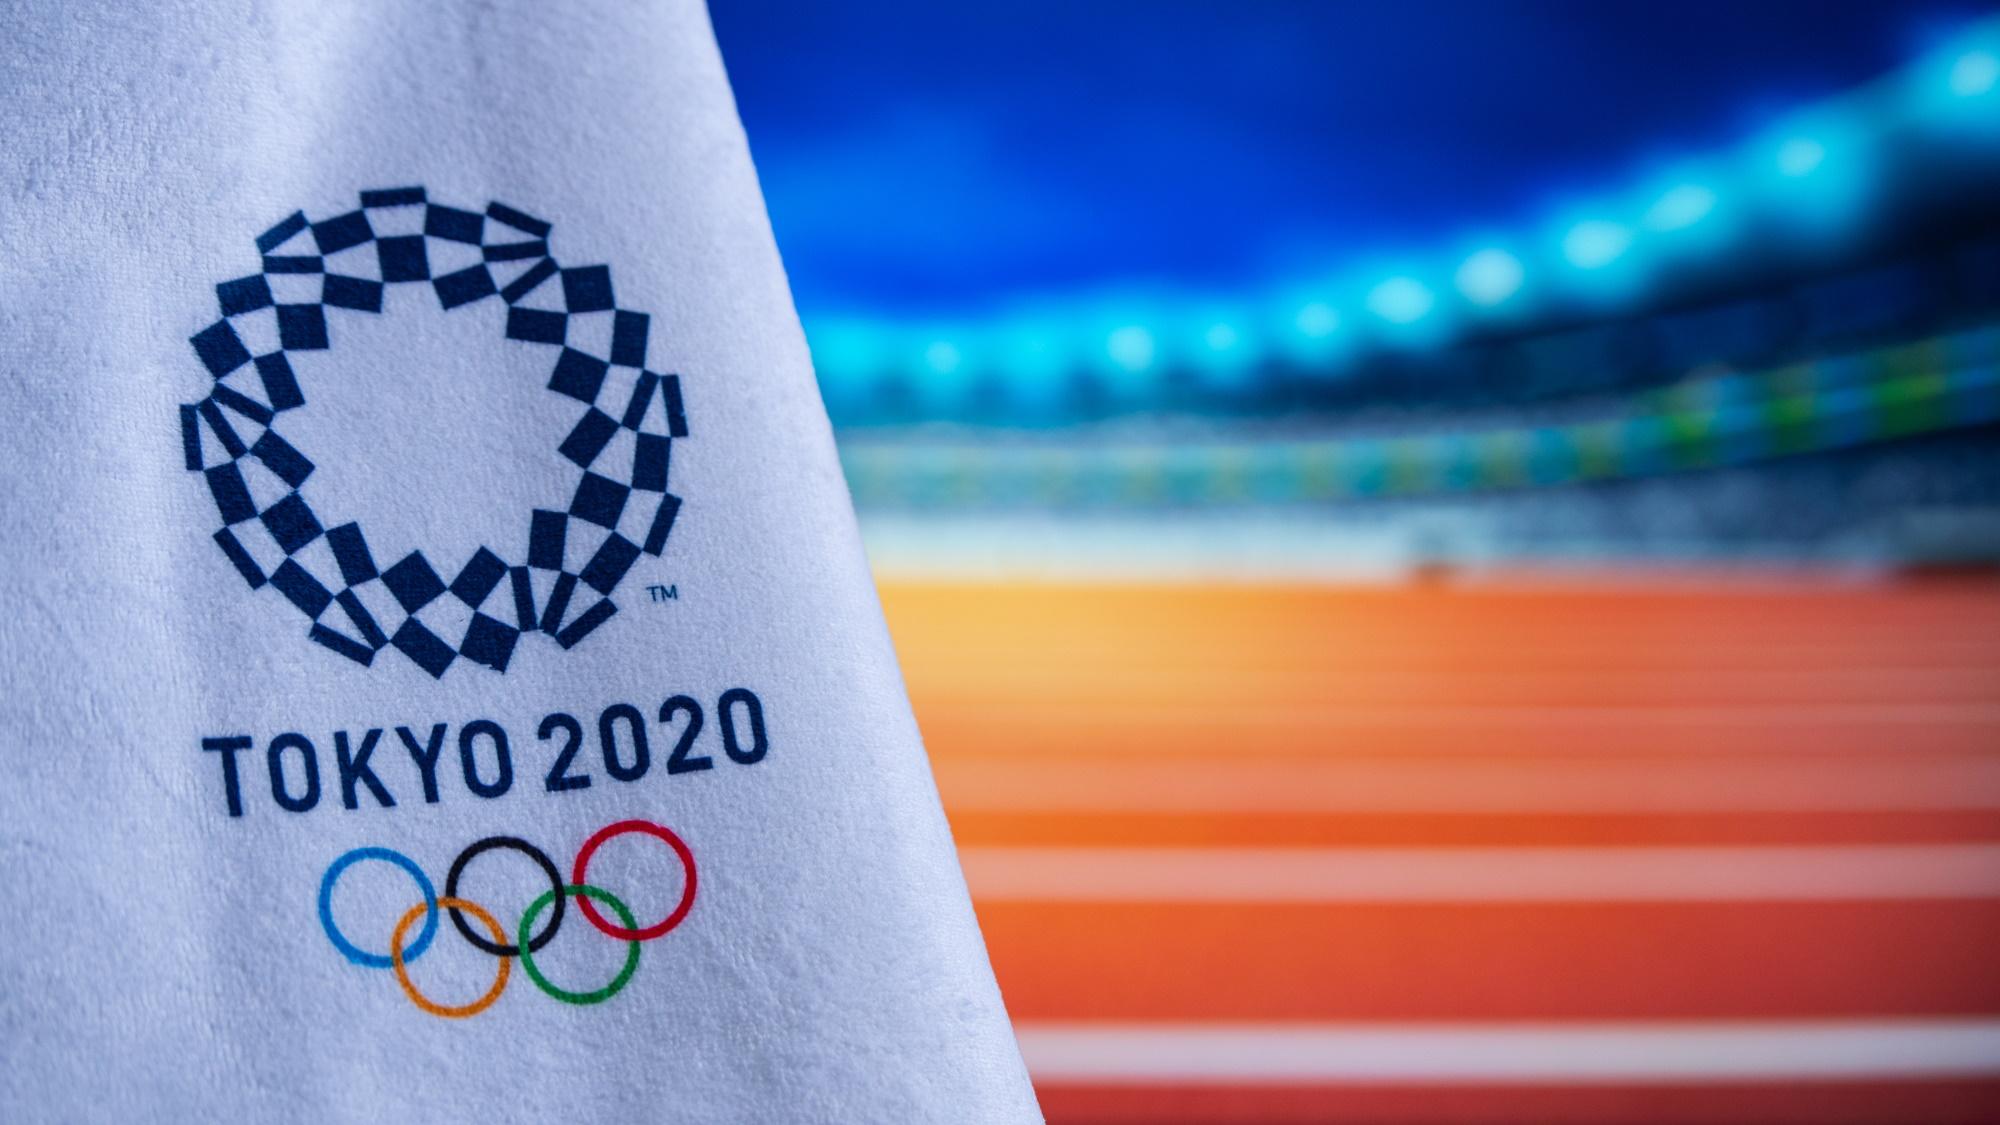 افتتاحية أولمبياد طوكيو 2020 أثارت الإعجاب، لكن مع بعض الأعاجيب!